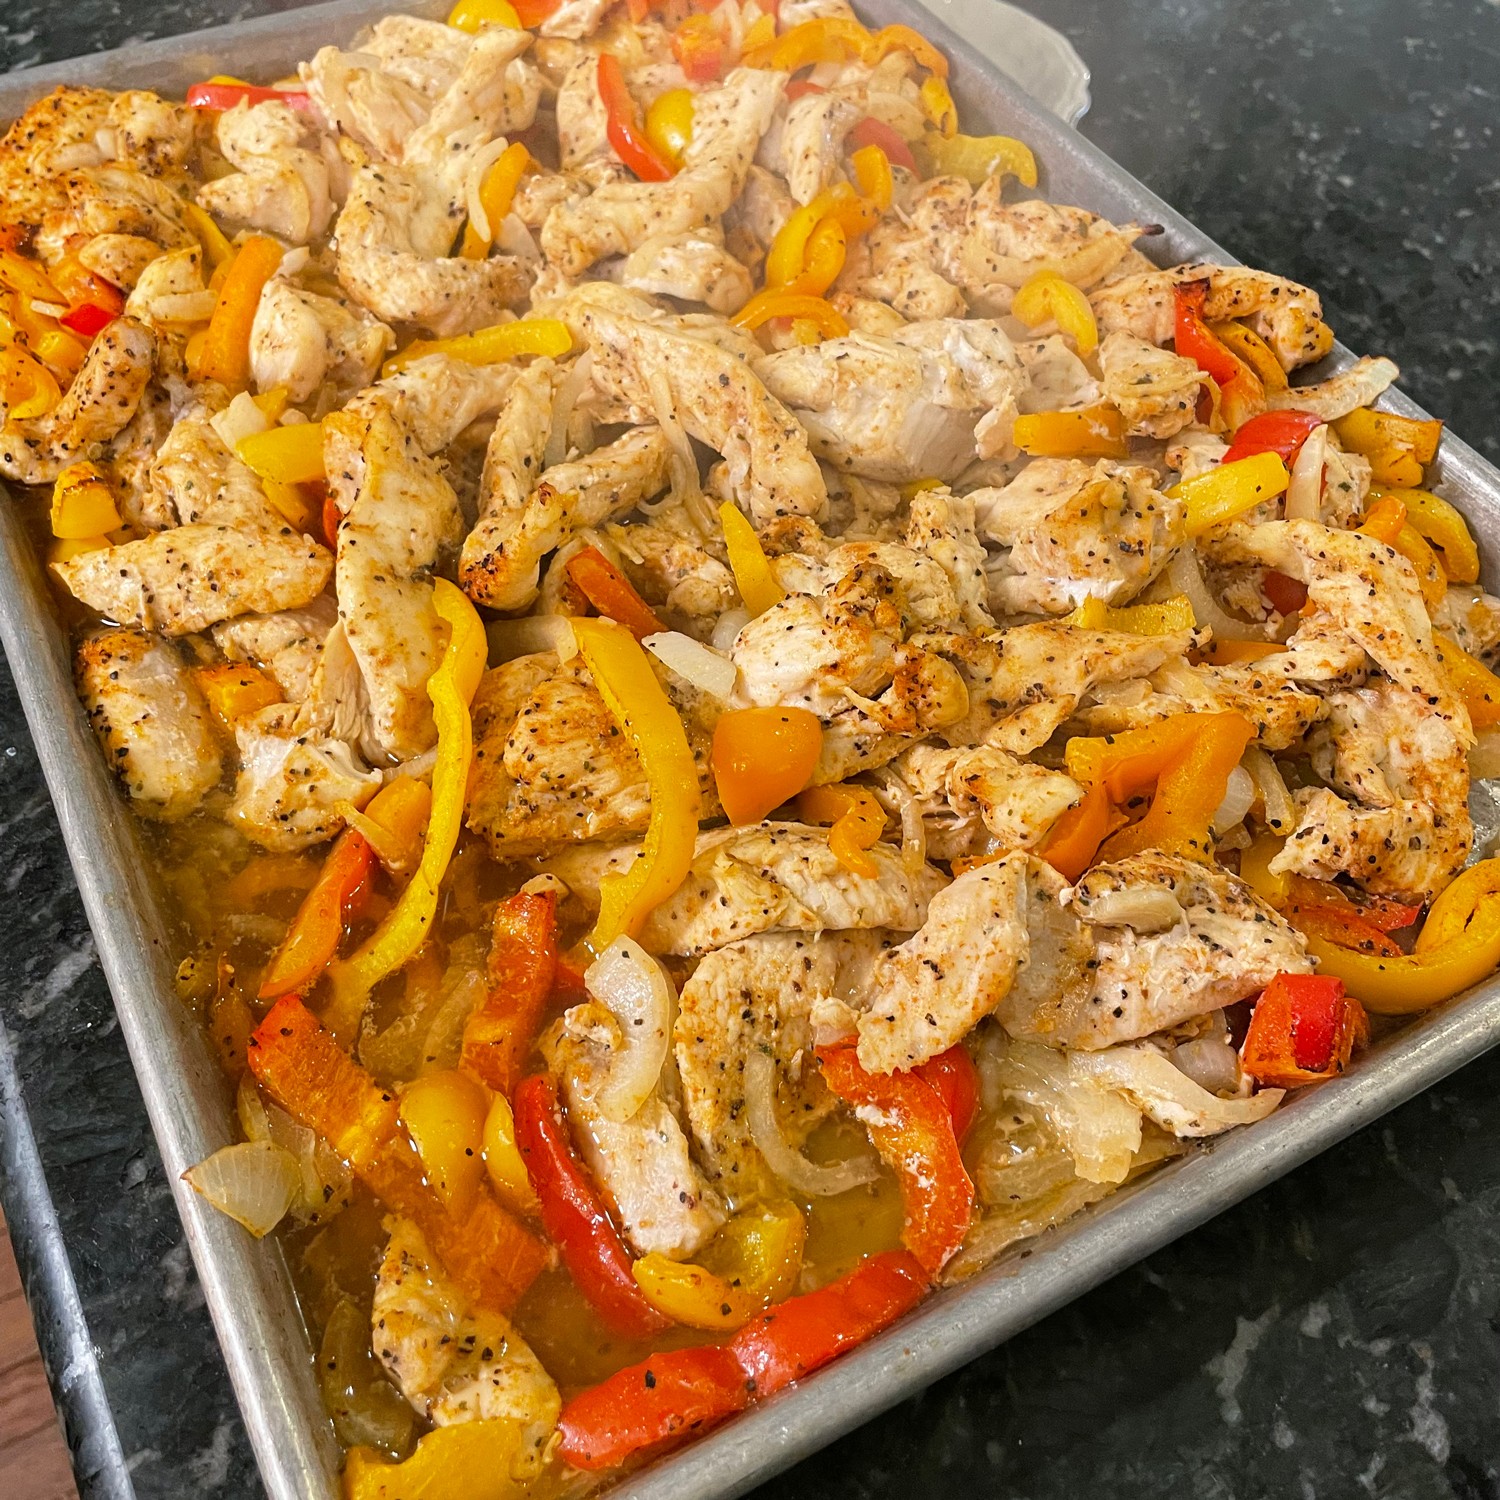 How to Make Quick and Easy Chicken Fajitas, Sheet Pan Chicken Fajitas  Recipe, Food Network Kitchen